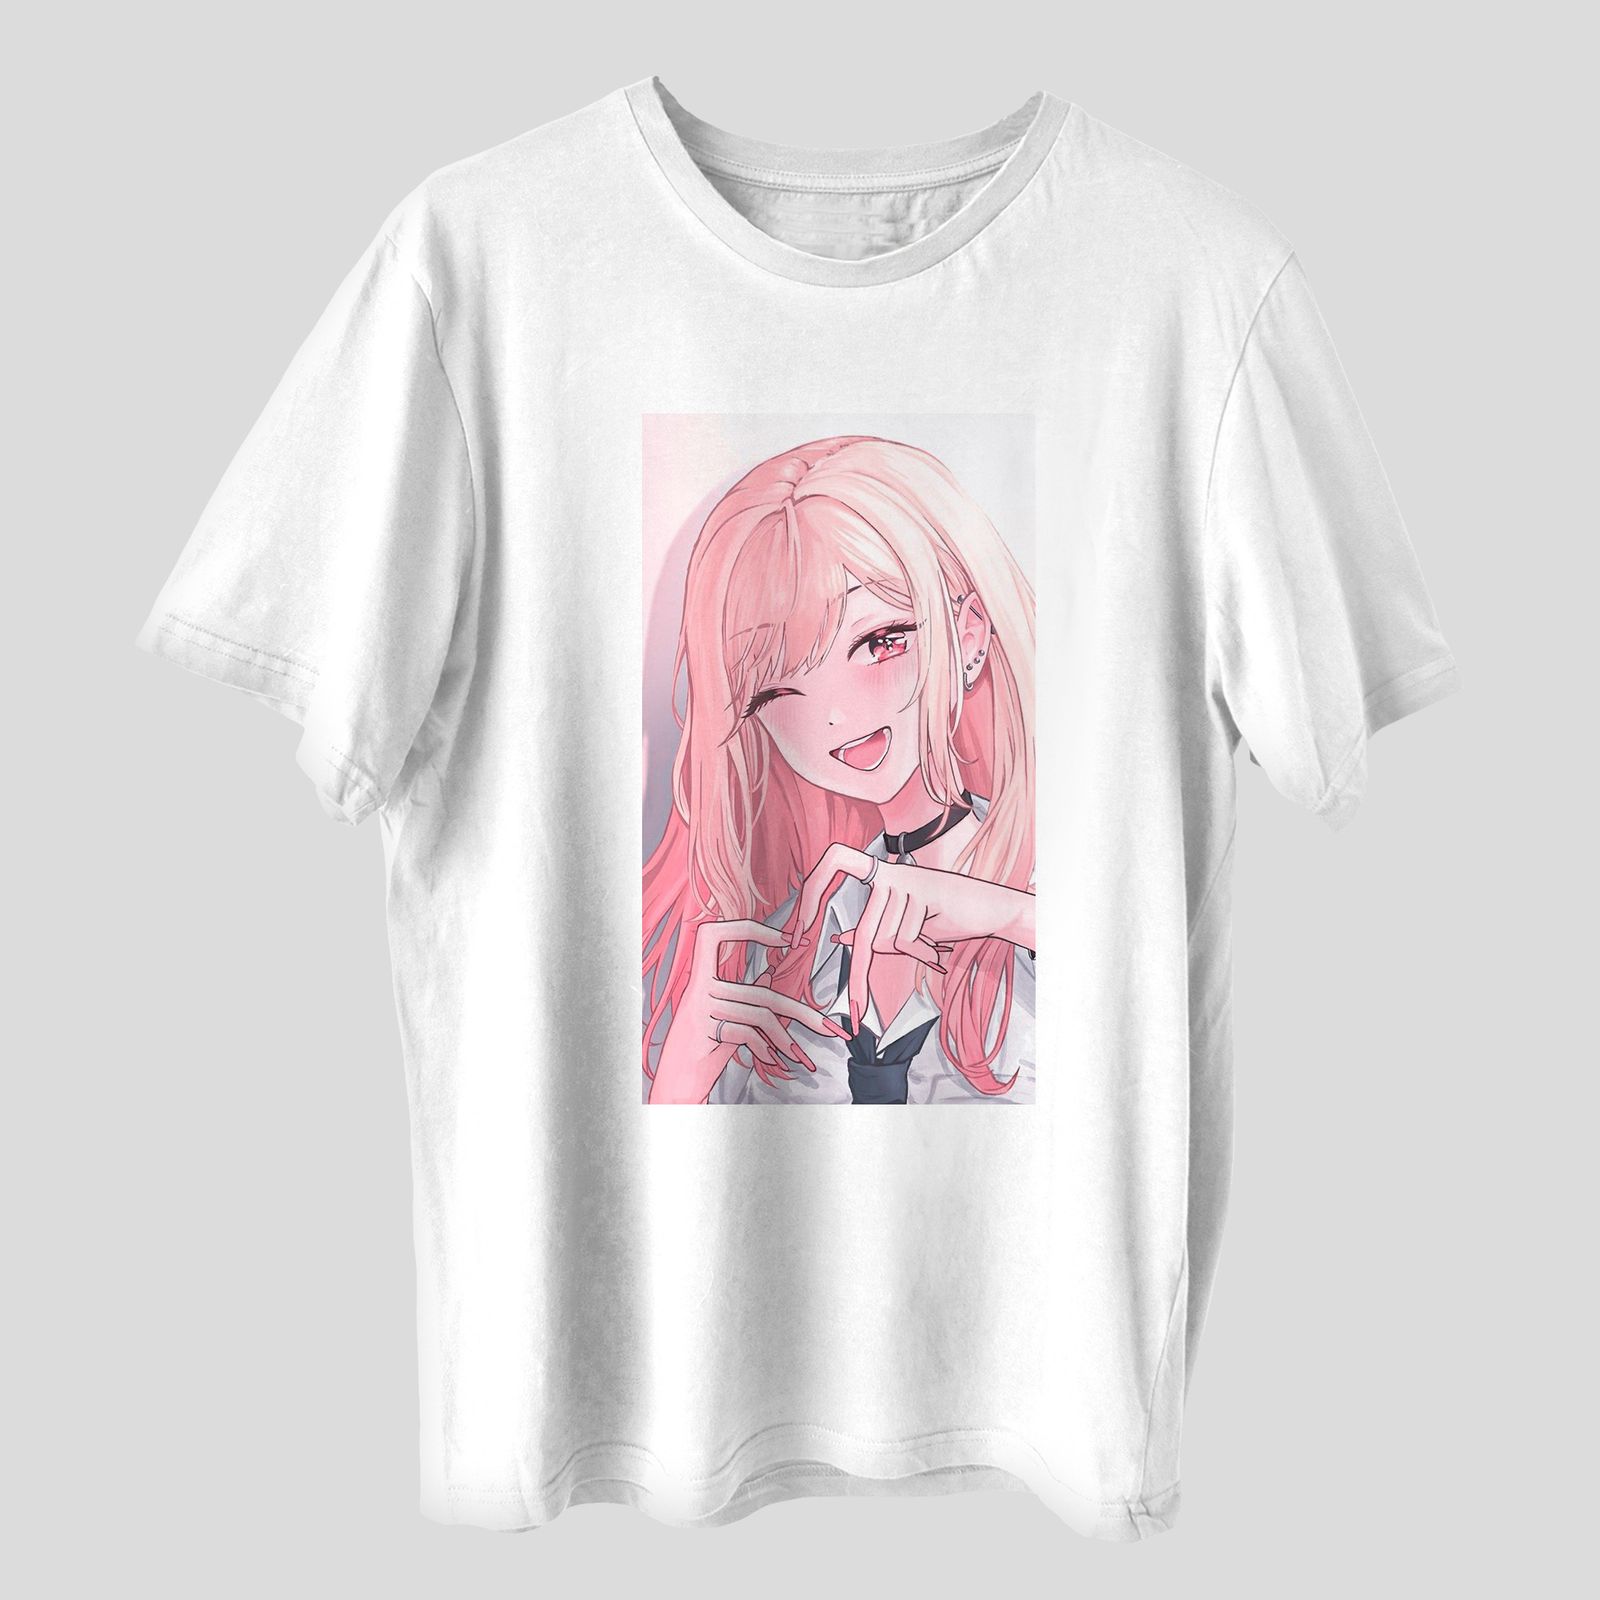 تی شرت آستین کوتاه دخترانه مدل انیمه کیوت فانتزی ژاپنی کد anm293 -  - 1